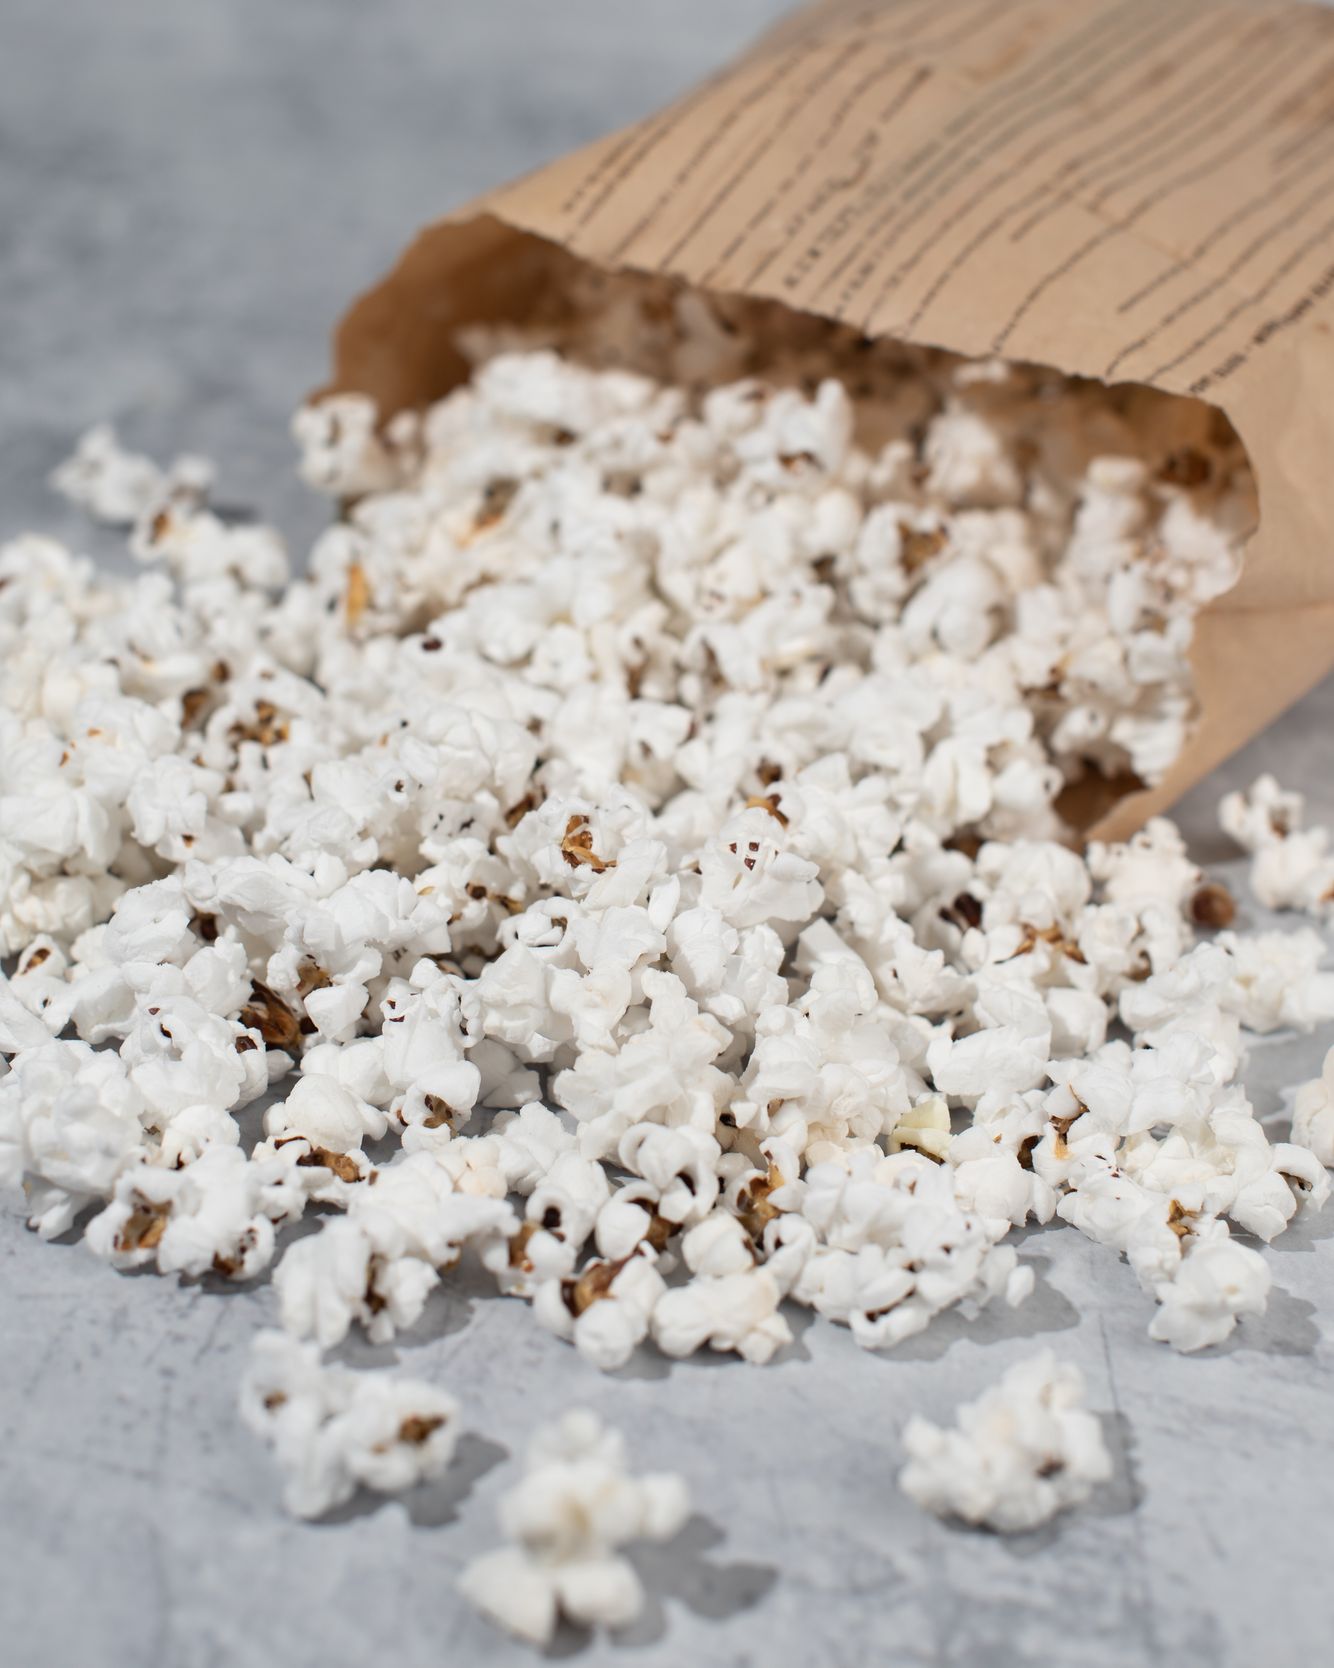 Vilgain Organic Popcorn